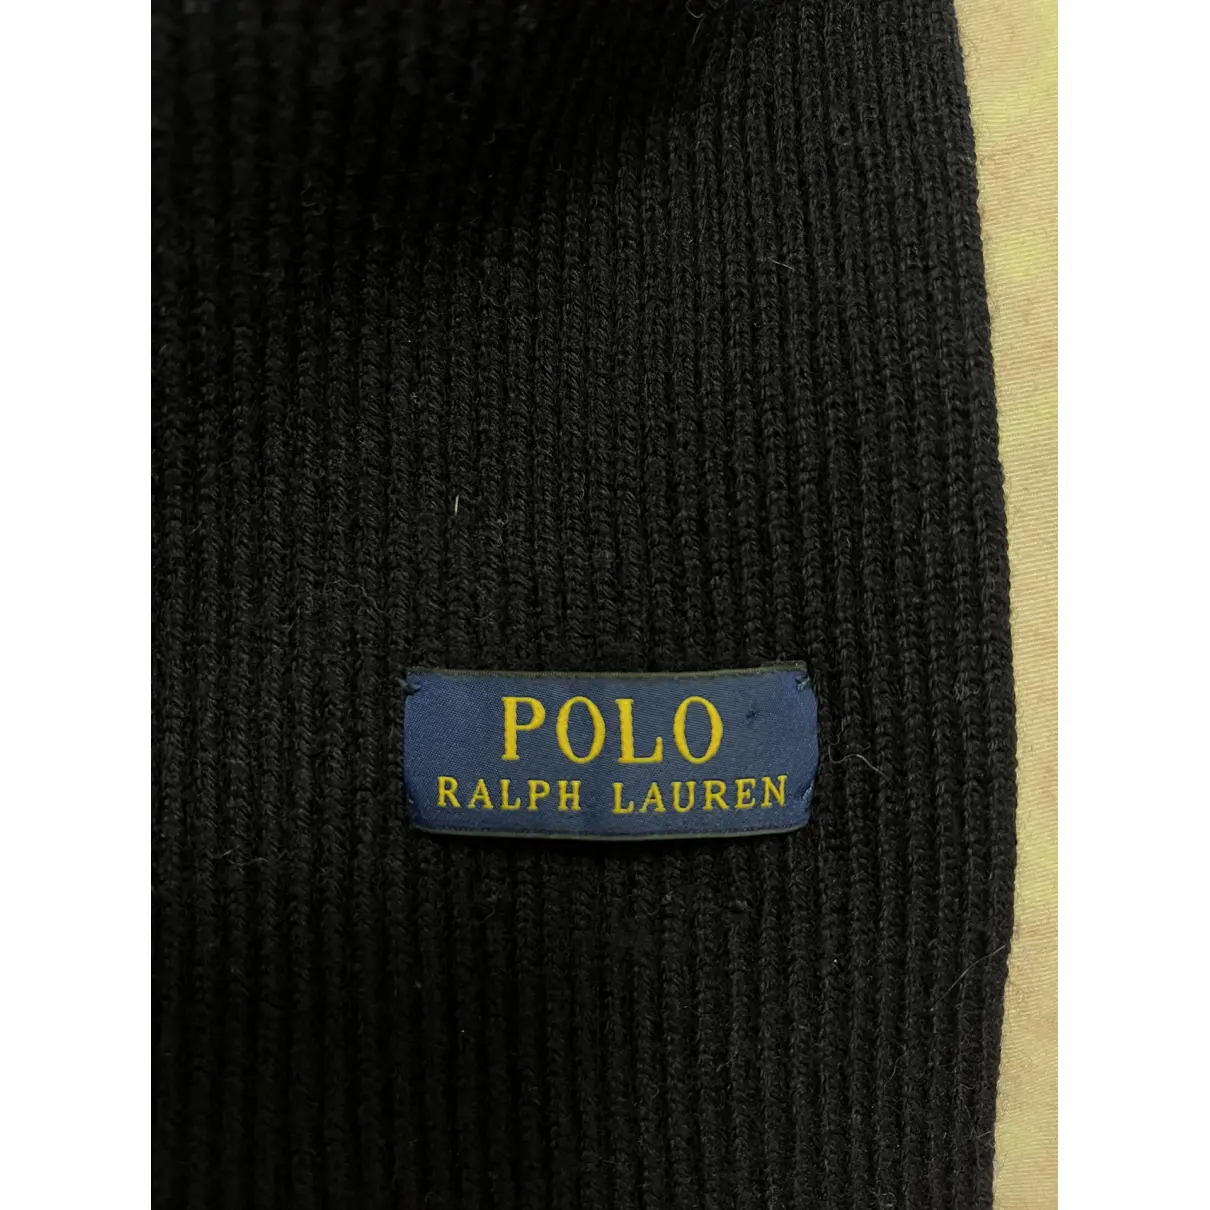 Buy Polo Ralph Lauren Scarf online